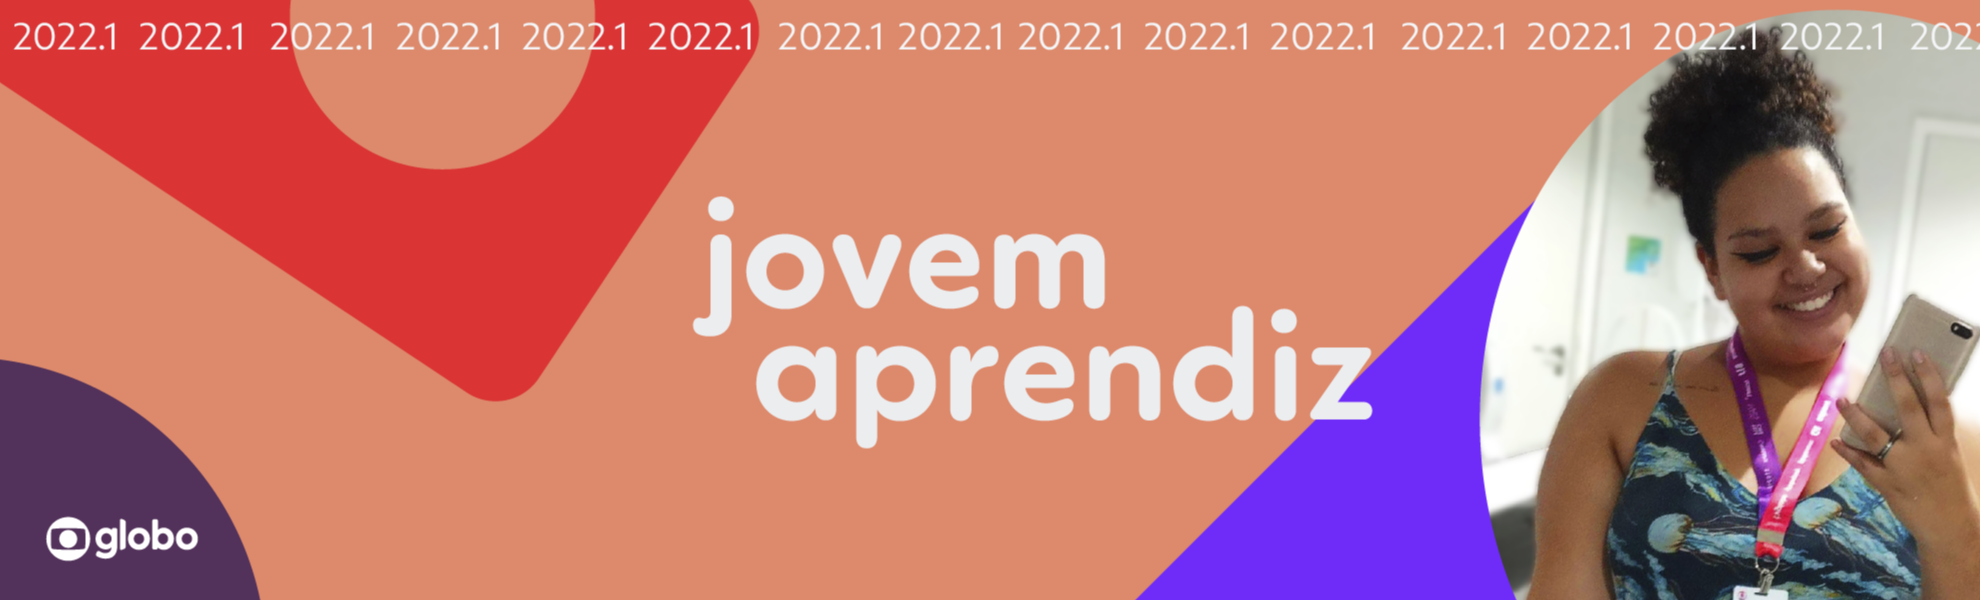 JOVEM APRENDIZ - PRIMEIRO EMPREGO - SUPER GOLFF CONTRATA - 09.11